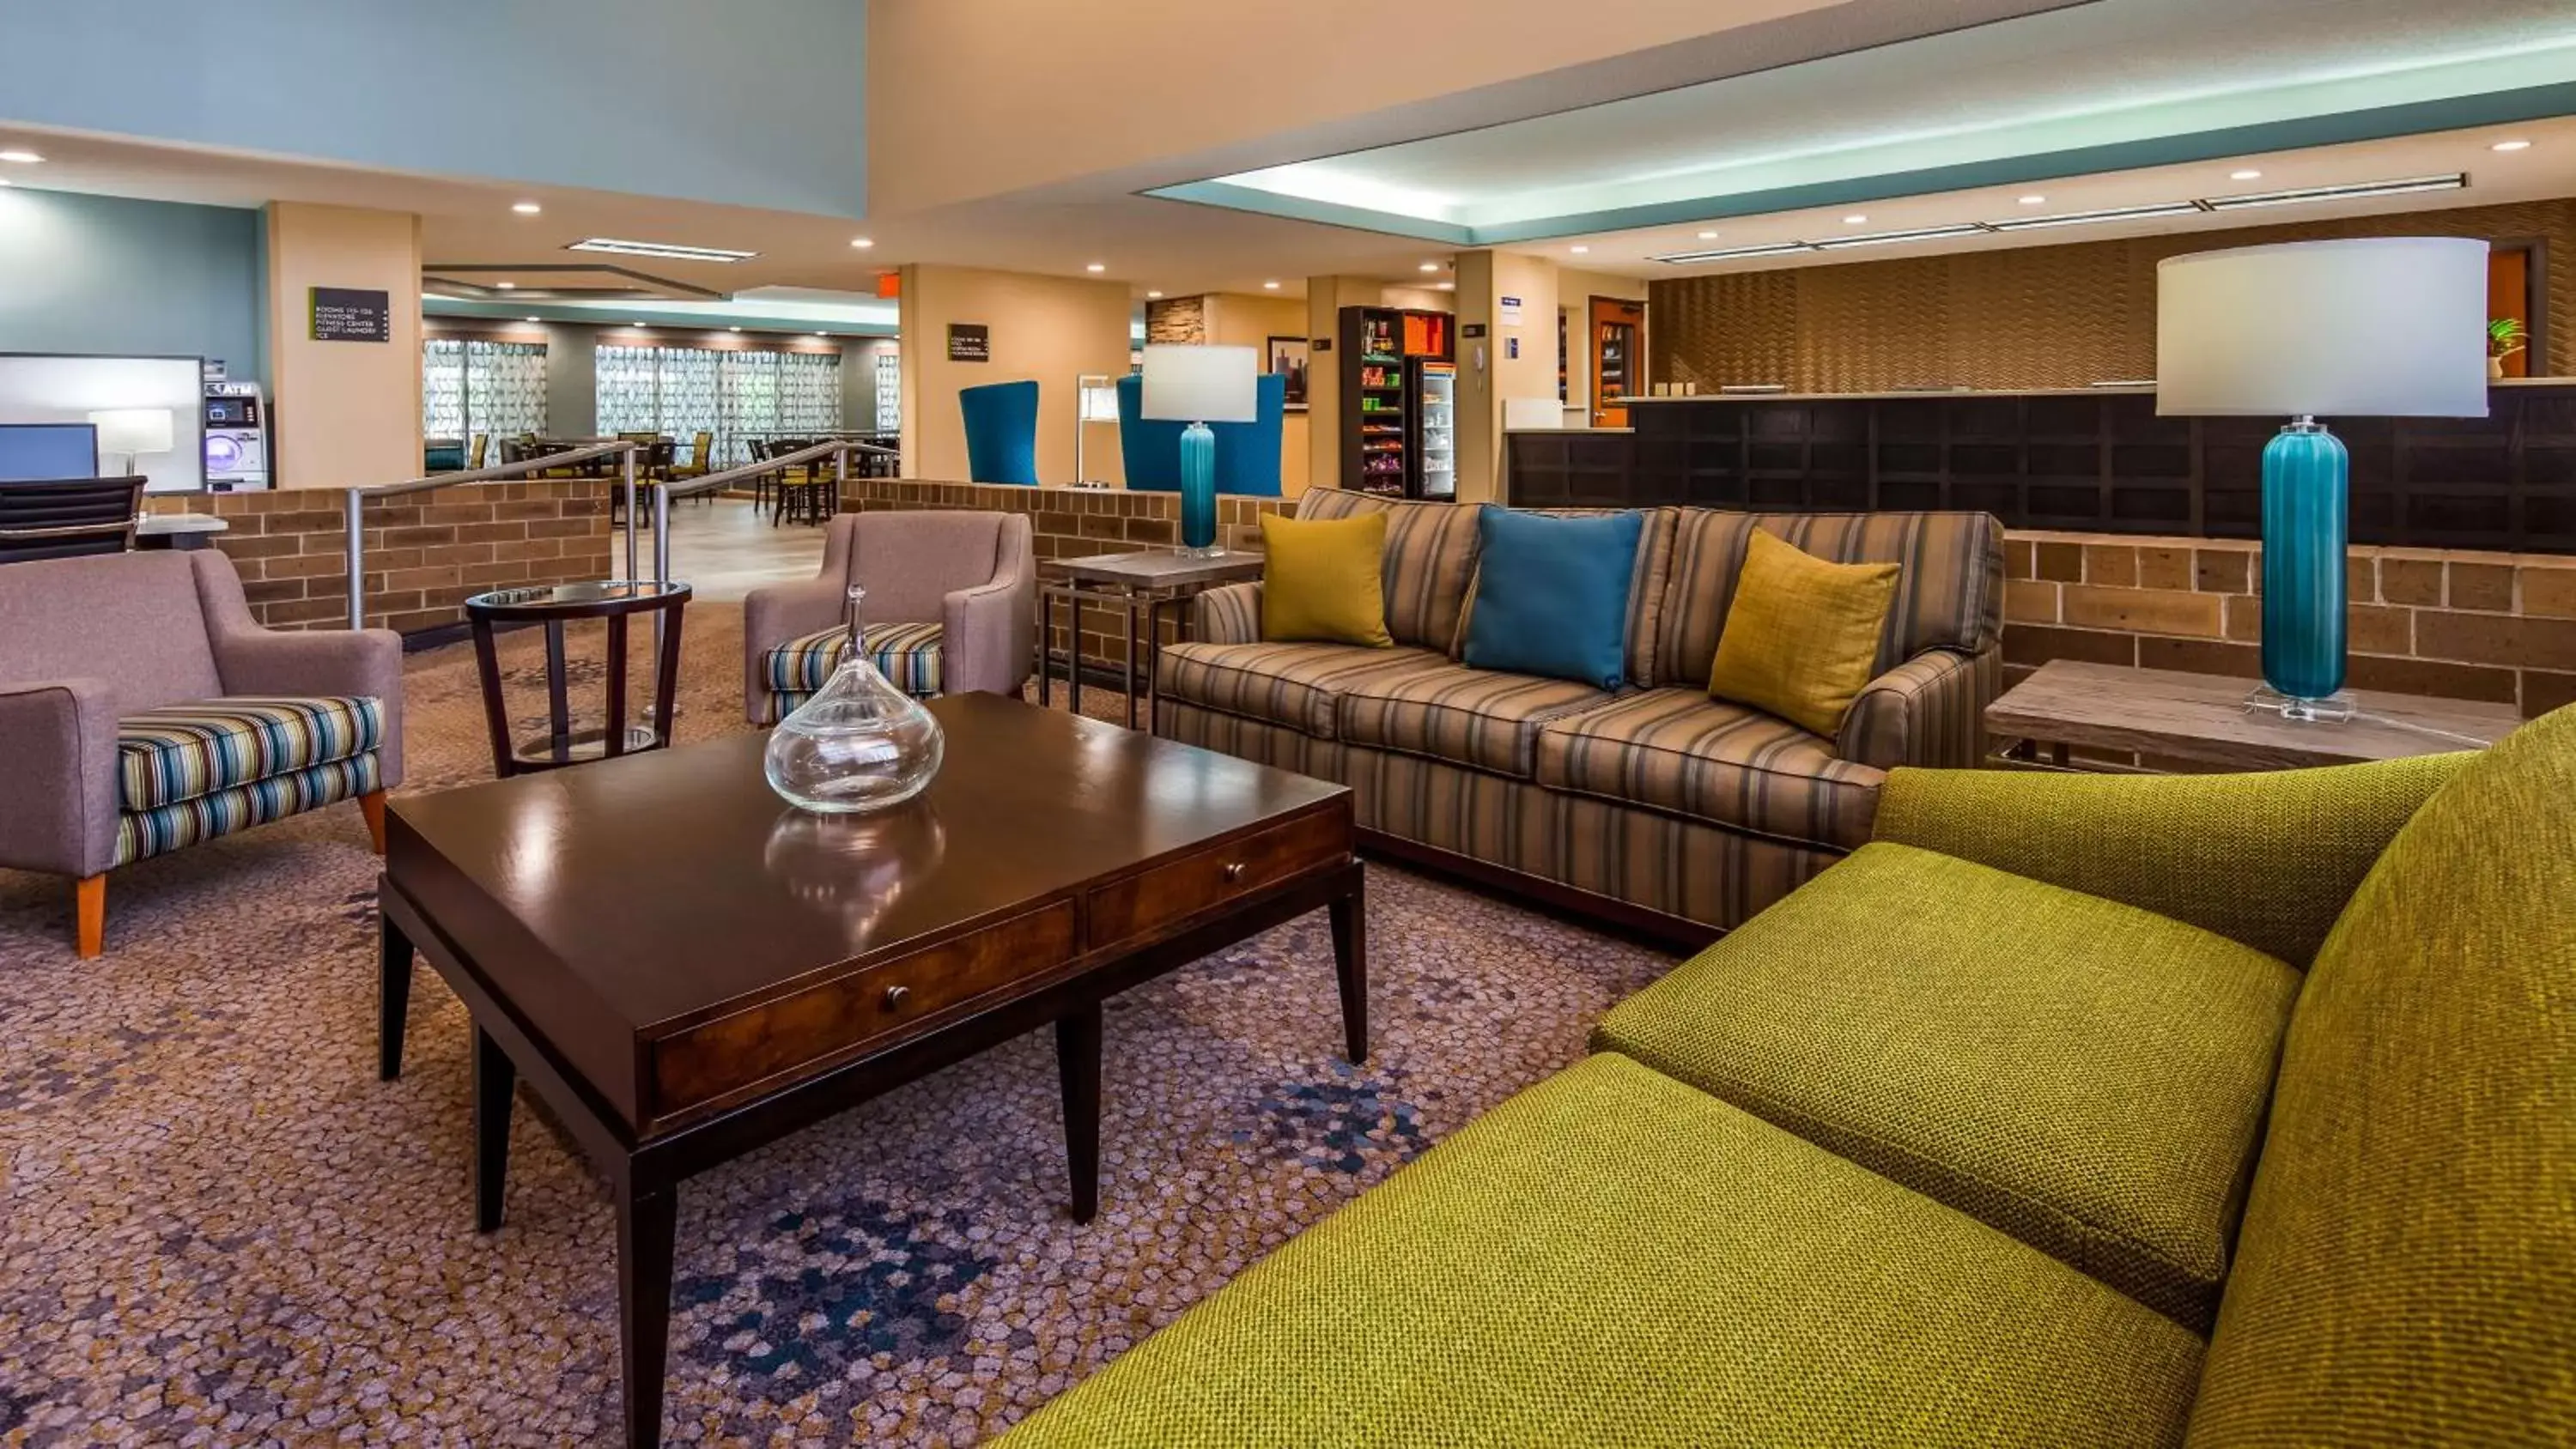 Lobby or reception, Lounge/Bar in Best Western Warren Hotel